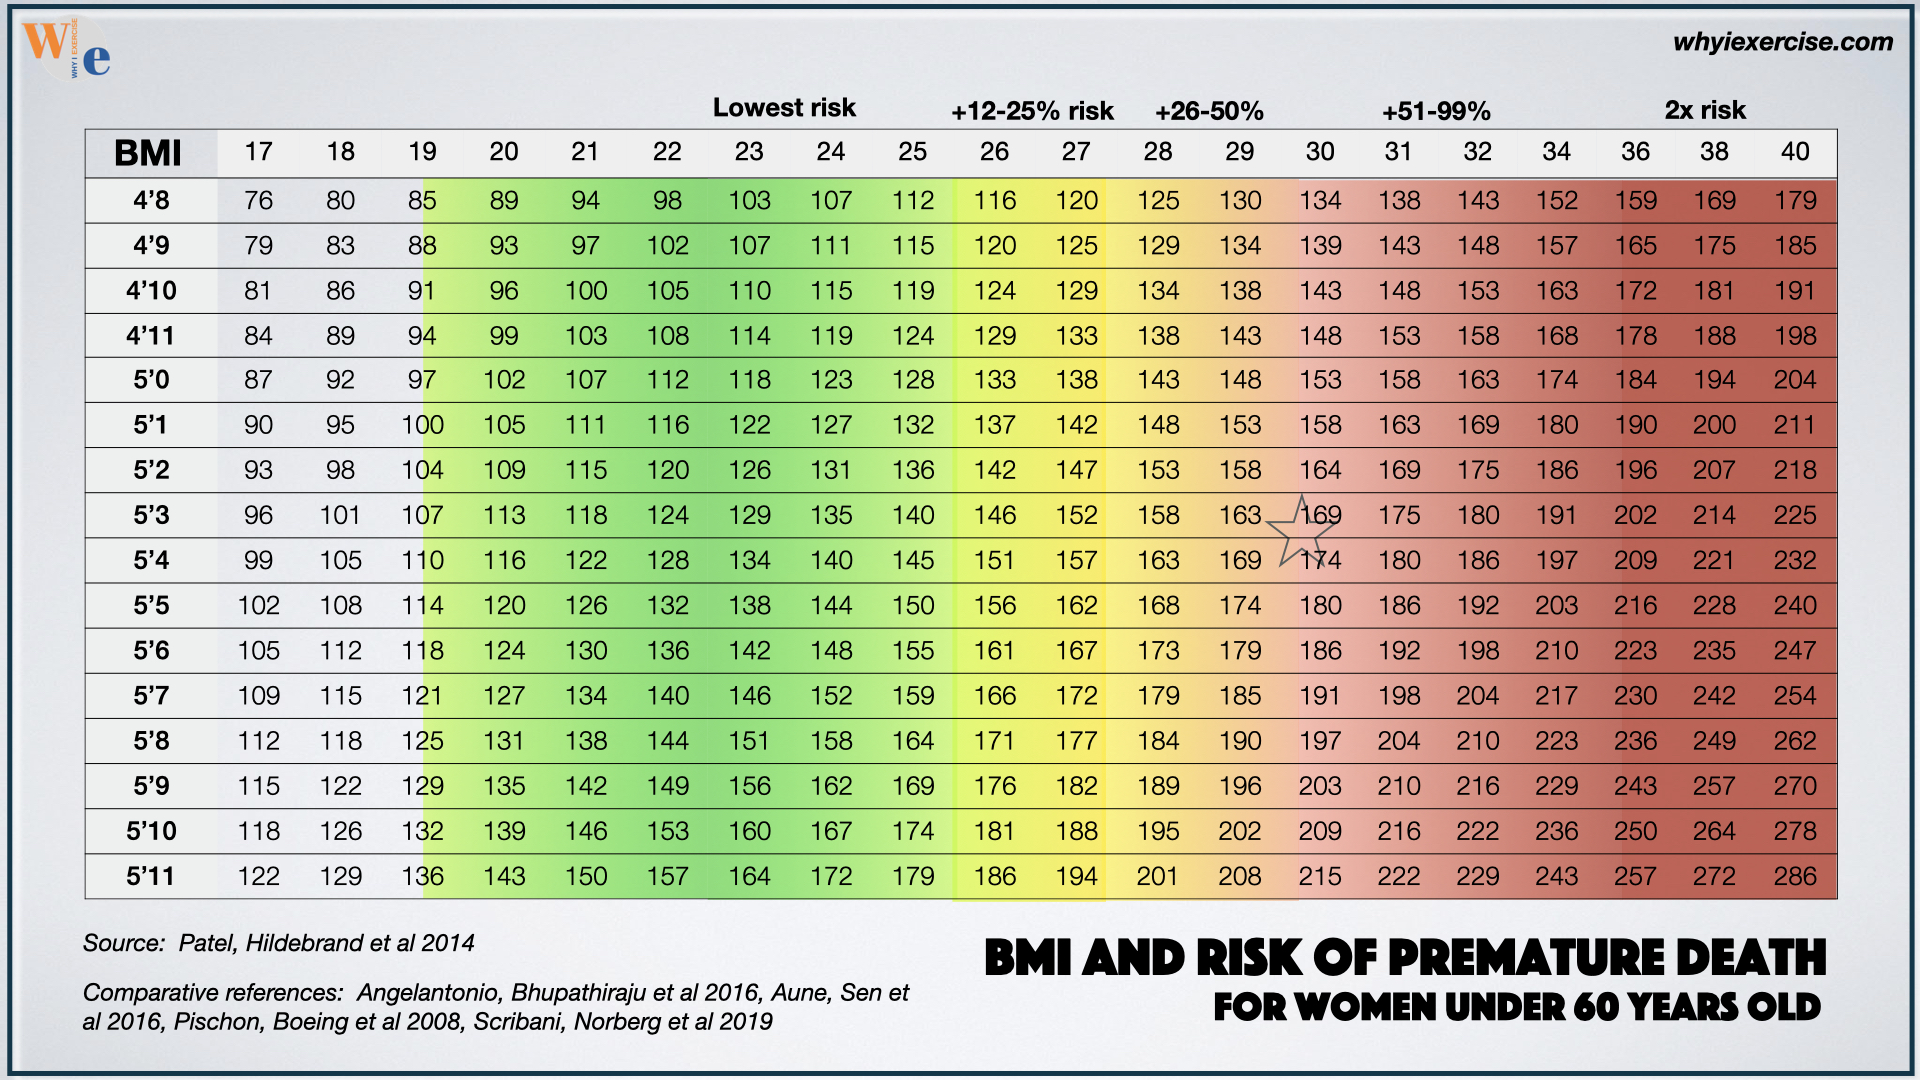 BMI and risk of premature death in women